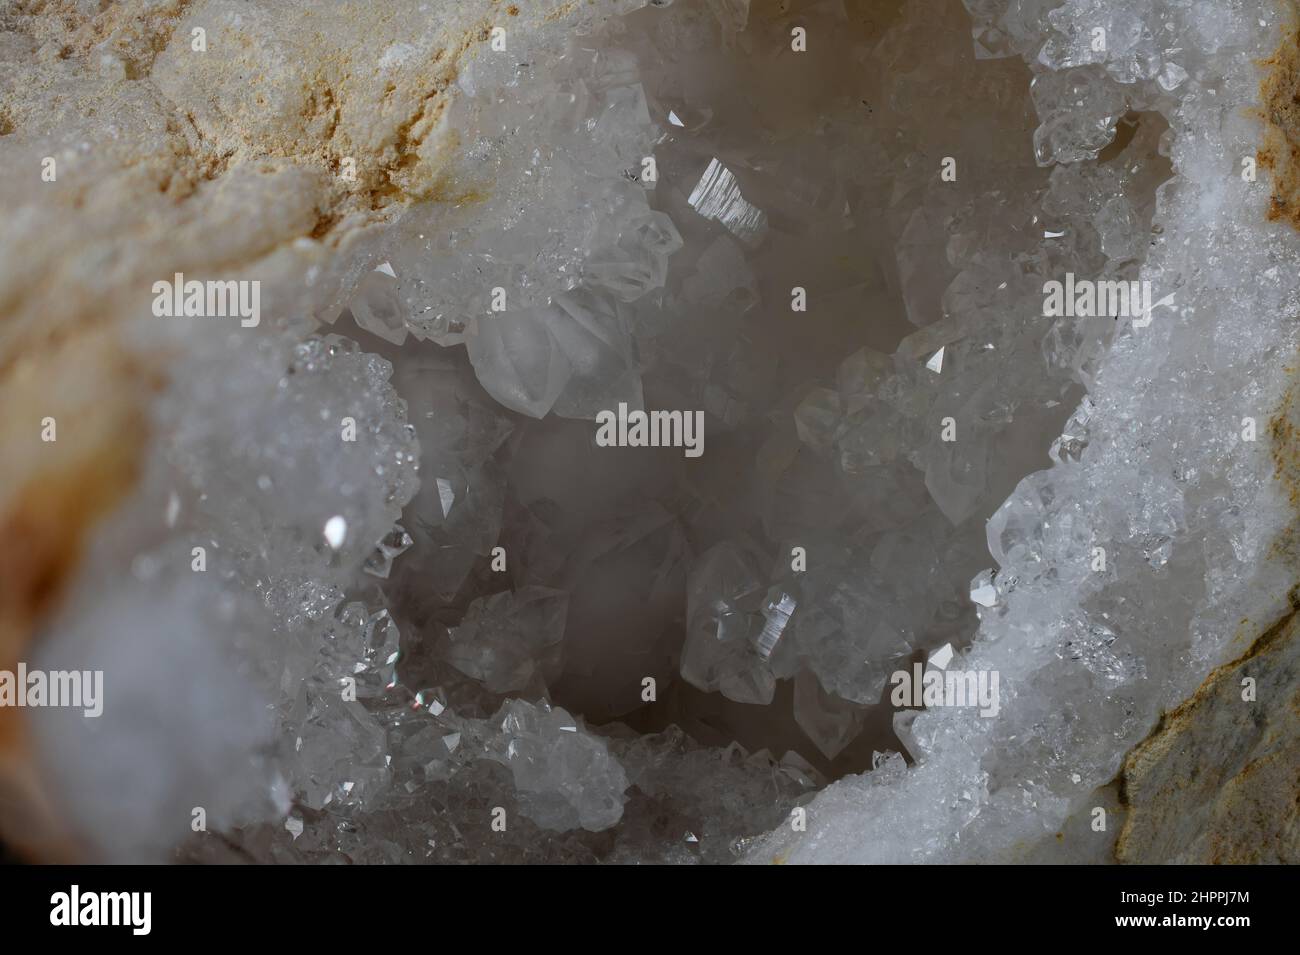 White Quartz Crystal Geode primo piano fotografato con una Nikon D850. Il quarzo bianco ha il significato e le proprietà per purificare l'energia negativa. Foto Stock